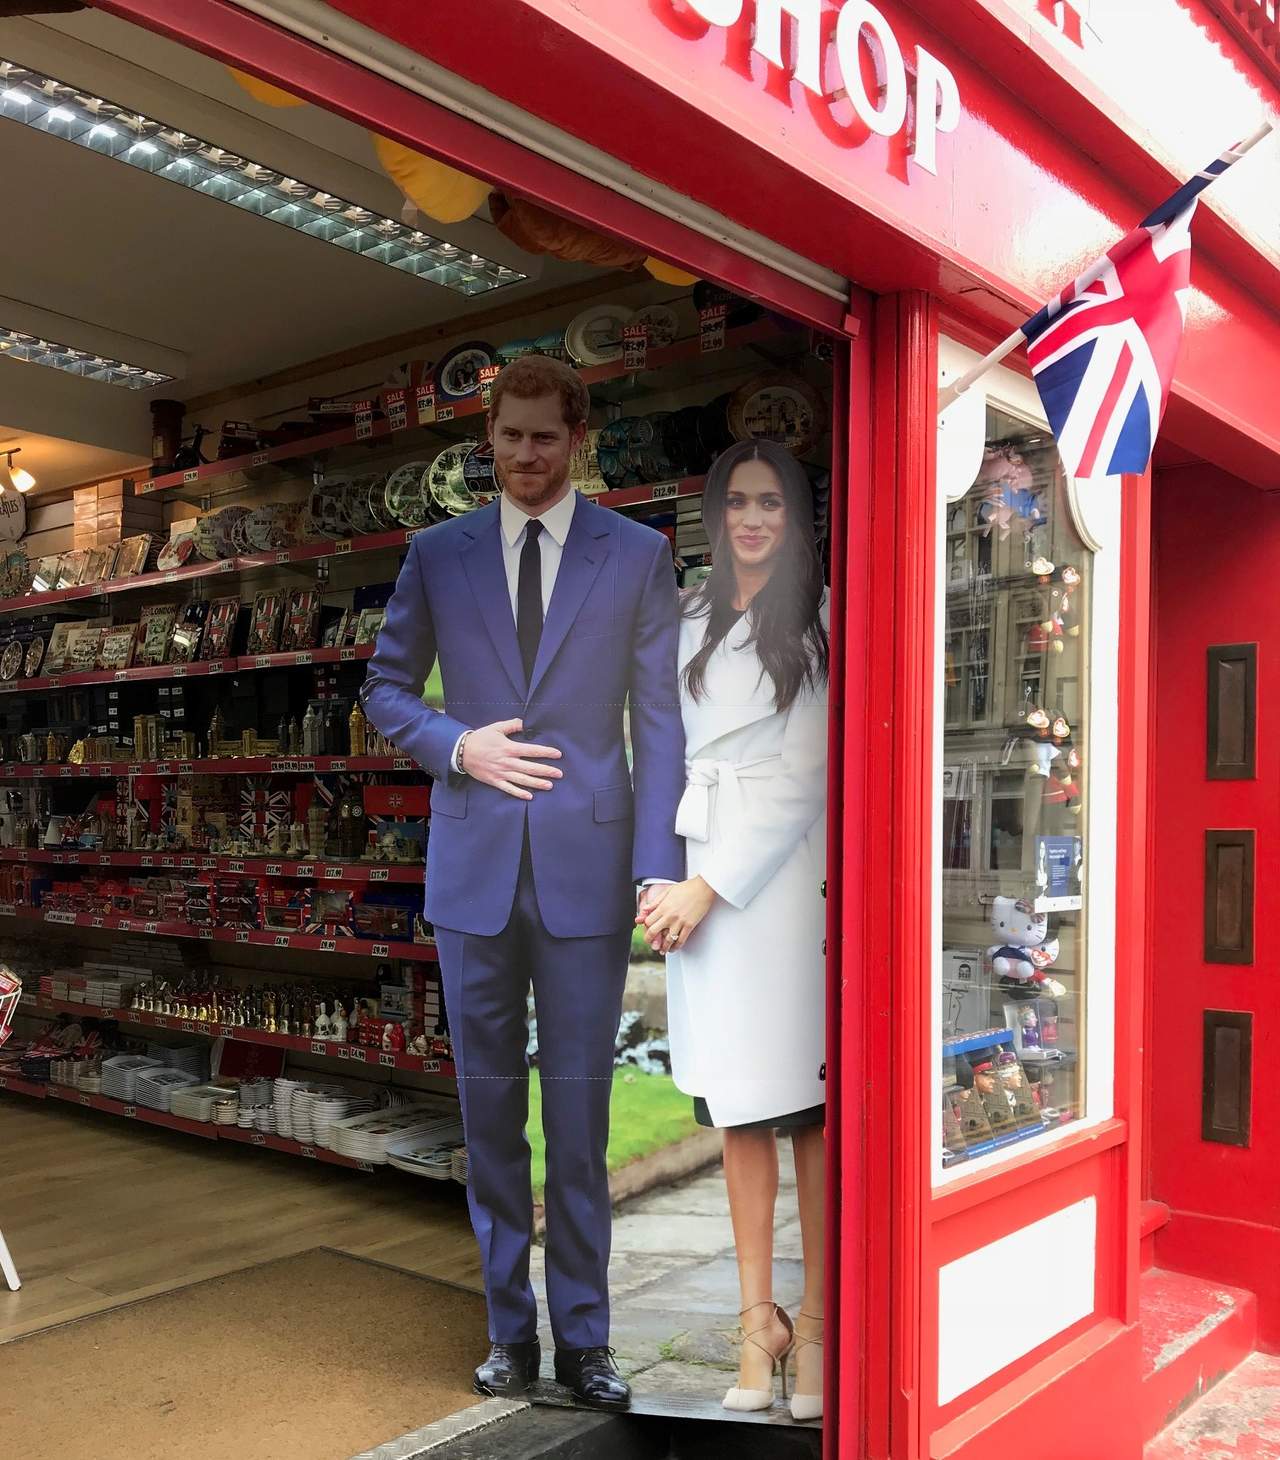 Alistan los detalles para la boda entre el príncipe Harry y la actriz Meghan Markle.